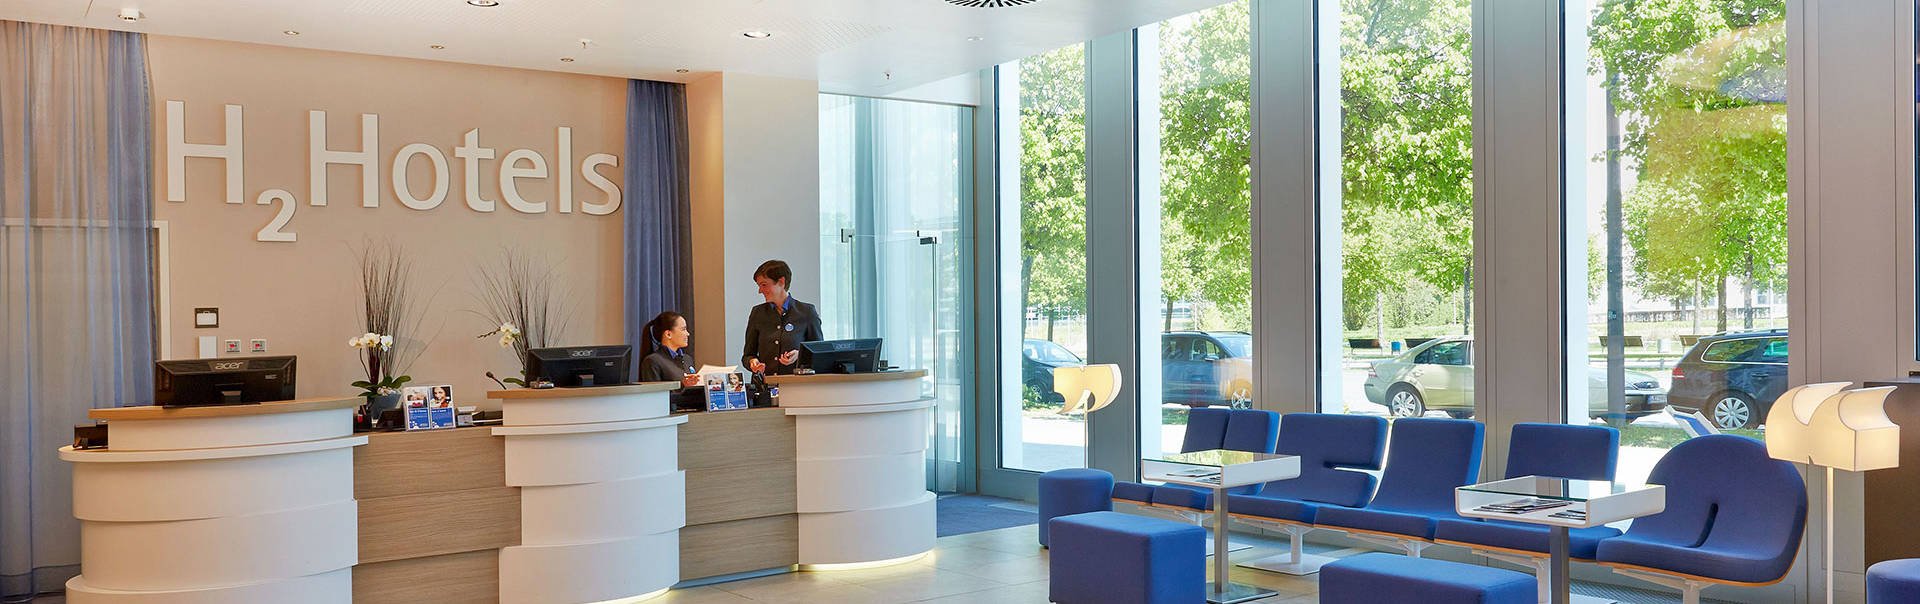 Innovatív design szállodák az európai nagyvárosokban - H2 Hotels - H-Hotels.com